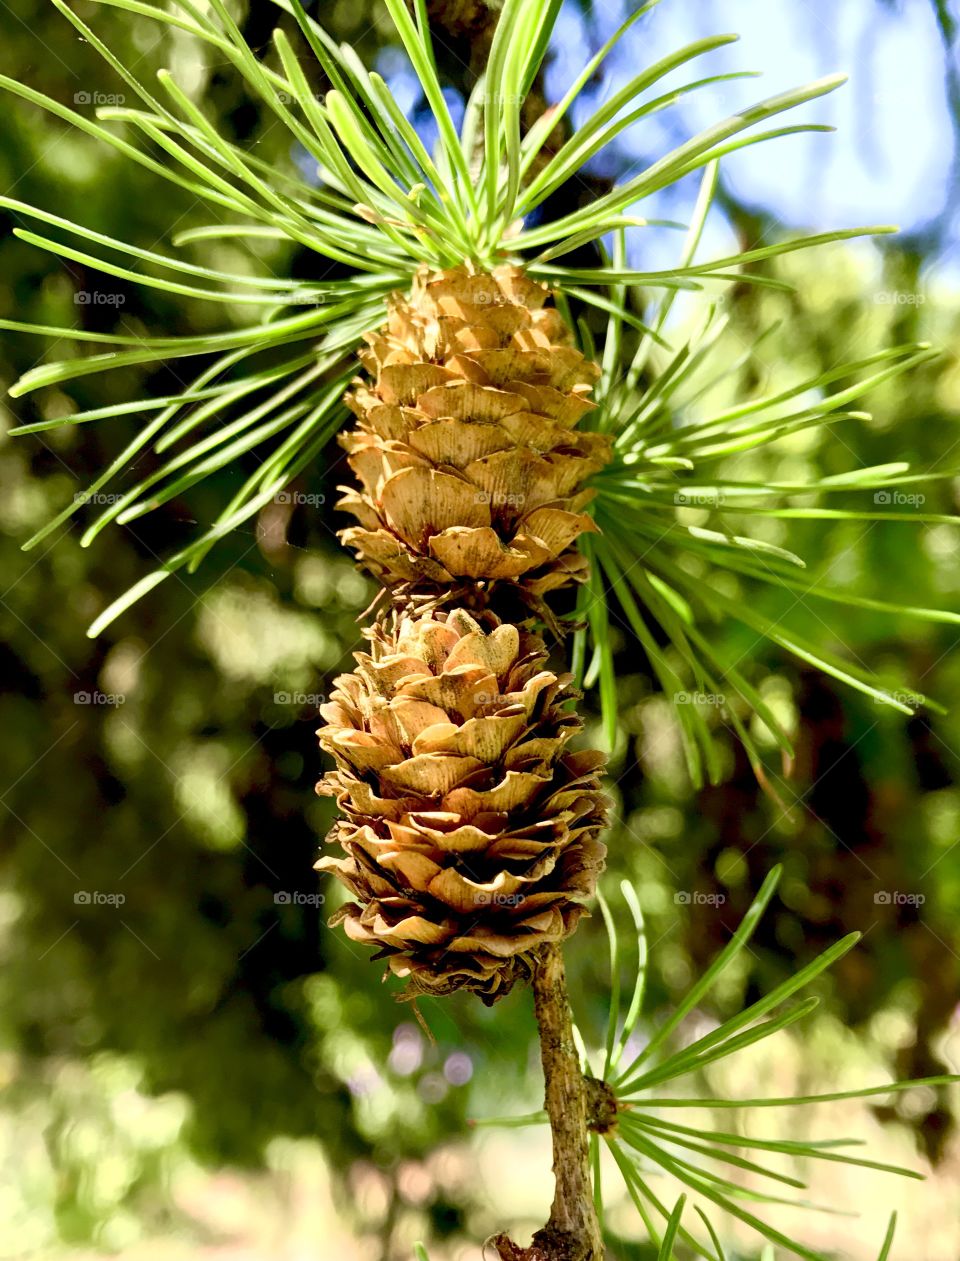 Pine pine pina?